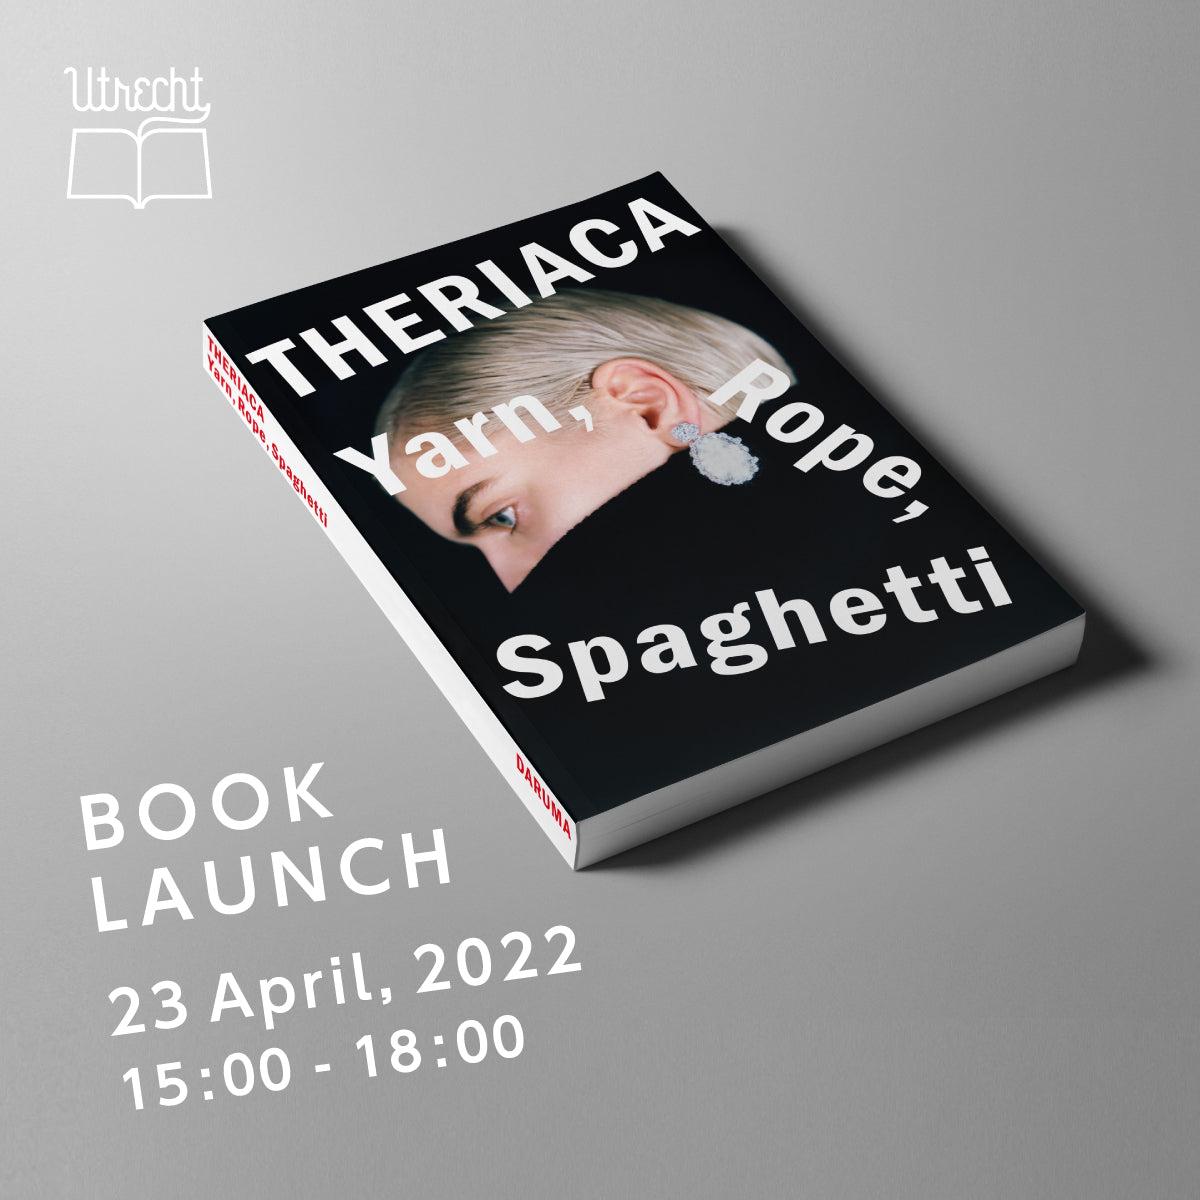 THERIACA Yarn, Rope, Spaghetti』ブックローンチ - Utrecht